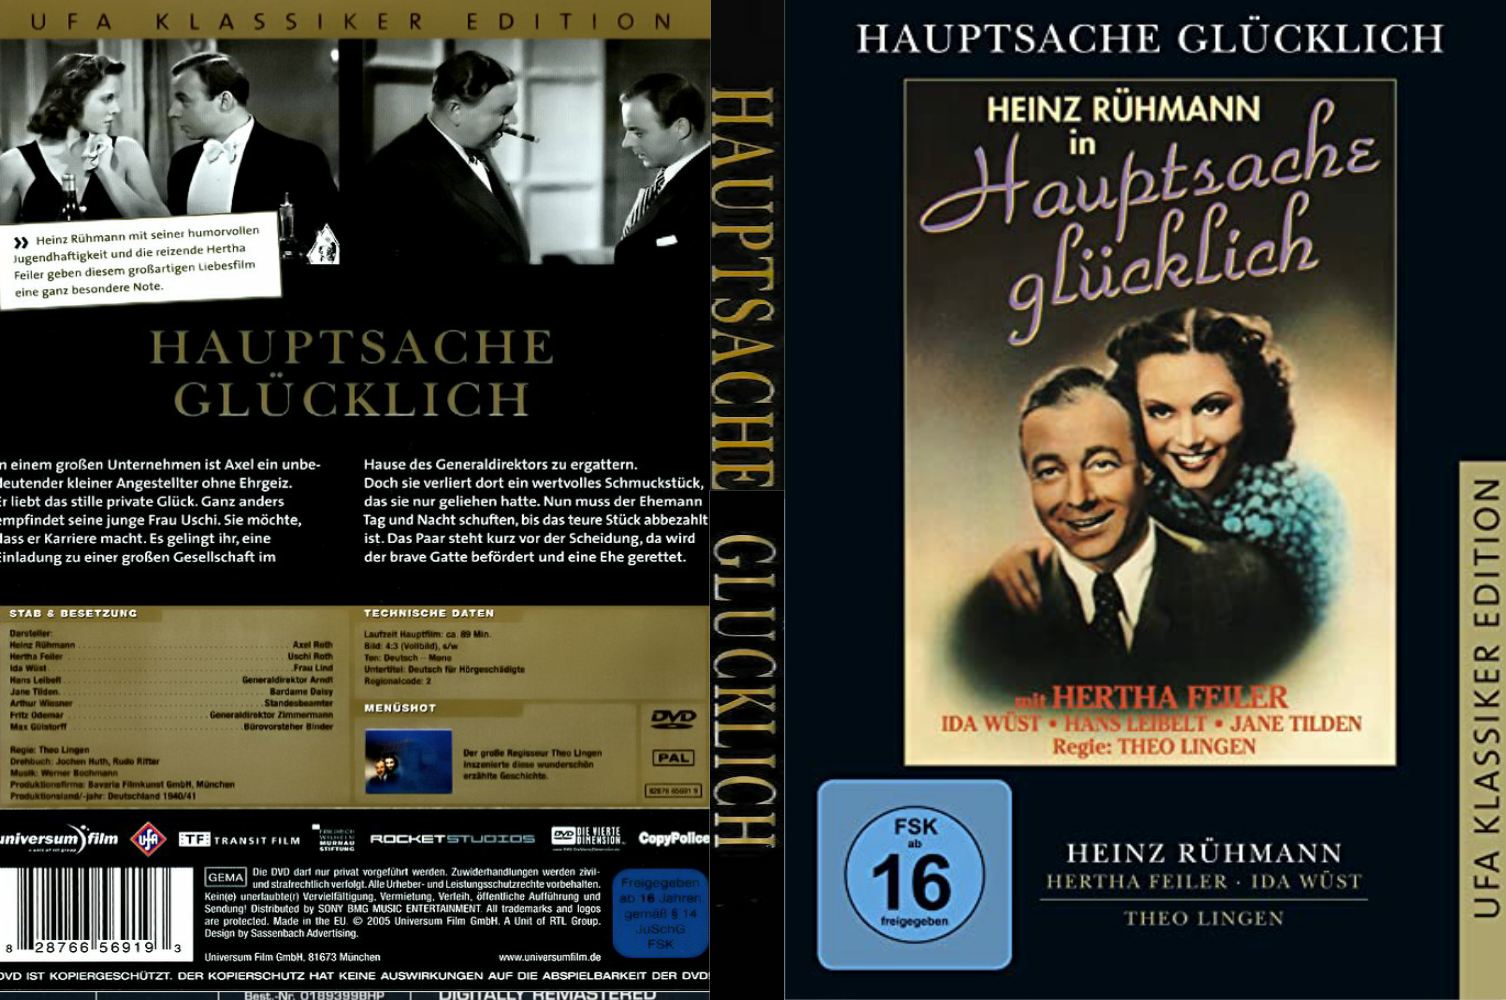 Hauptsache glücklich! mit Heinz Rühmann (1941)